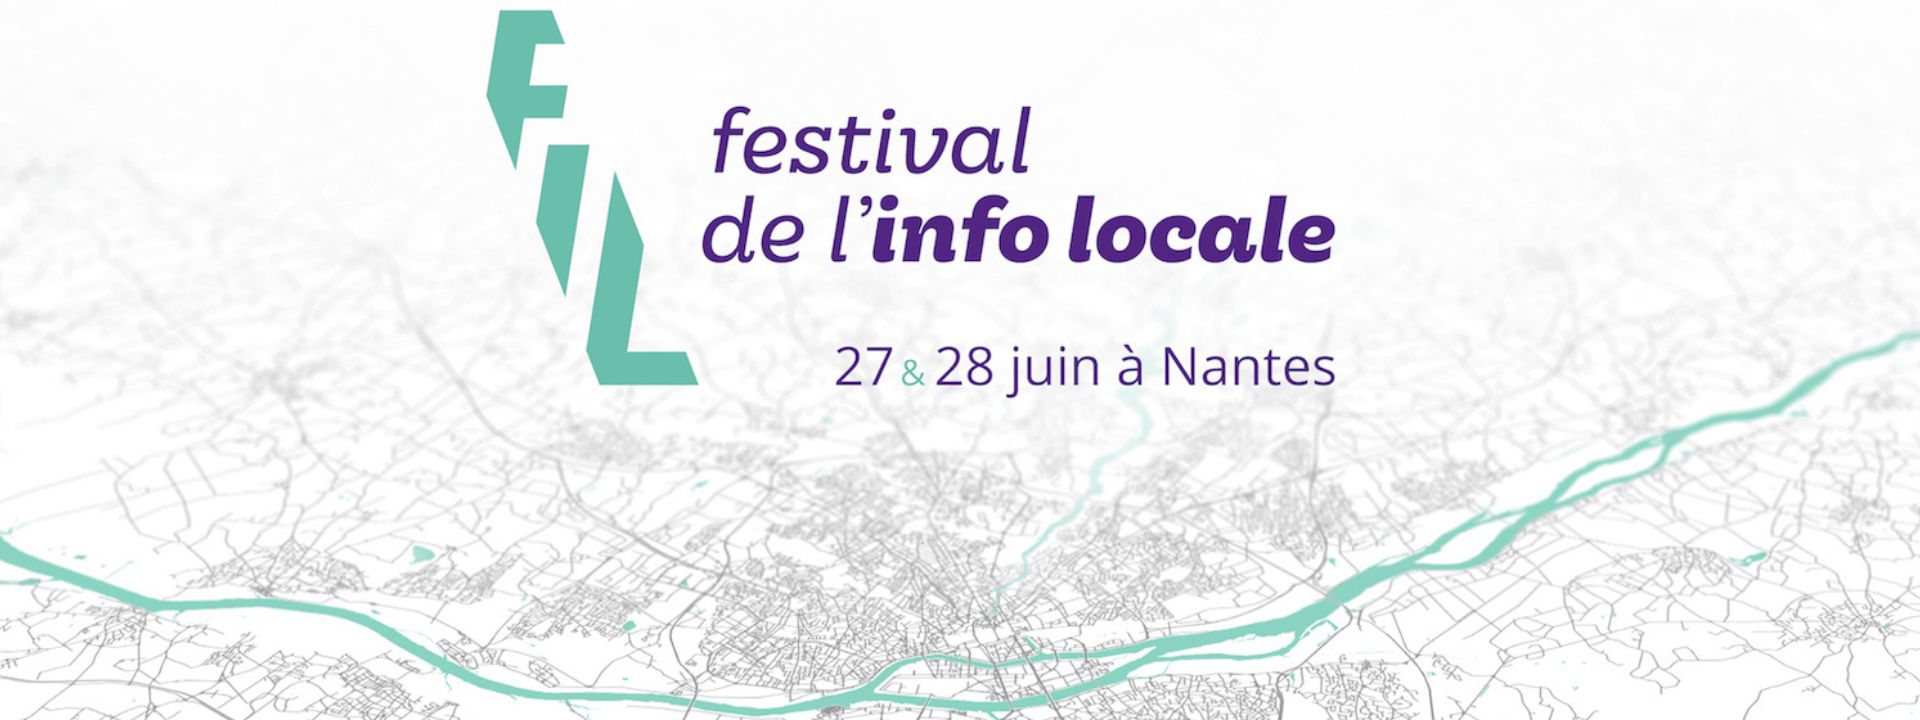 Festival de l'info locale 2019